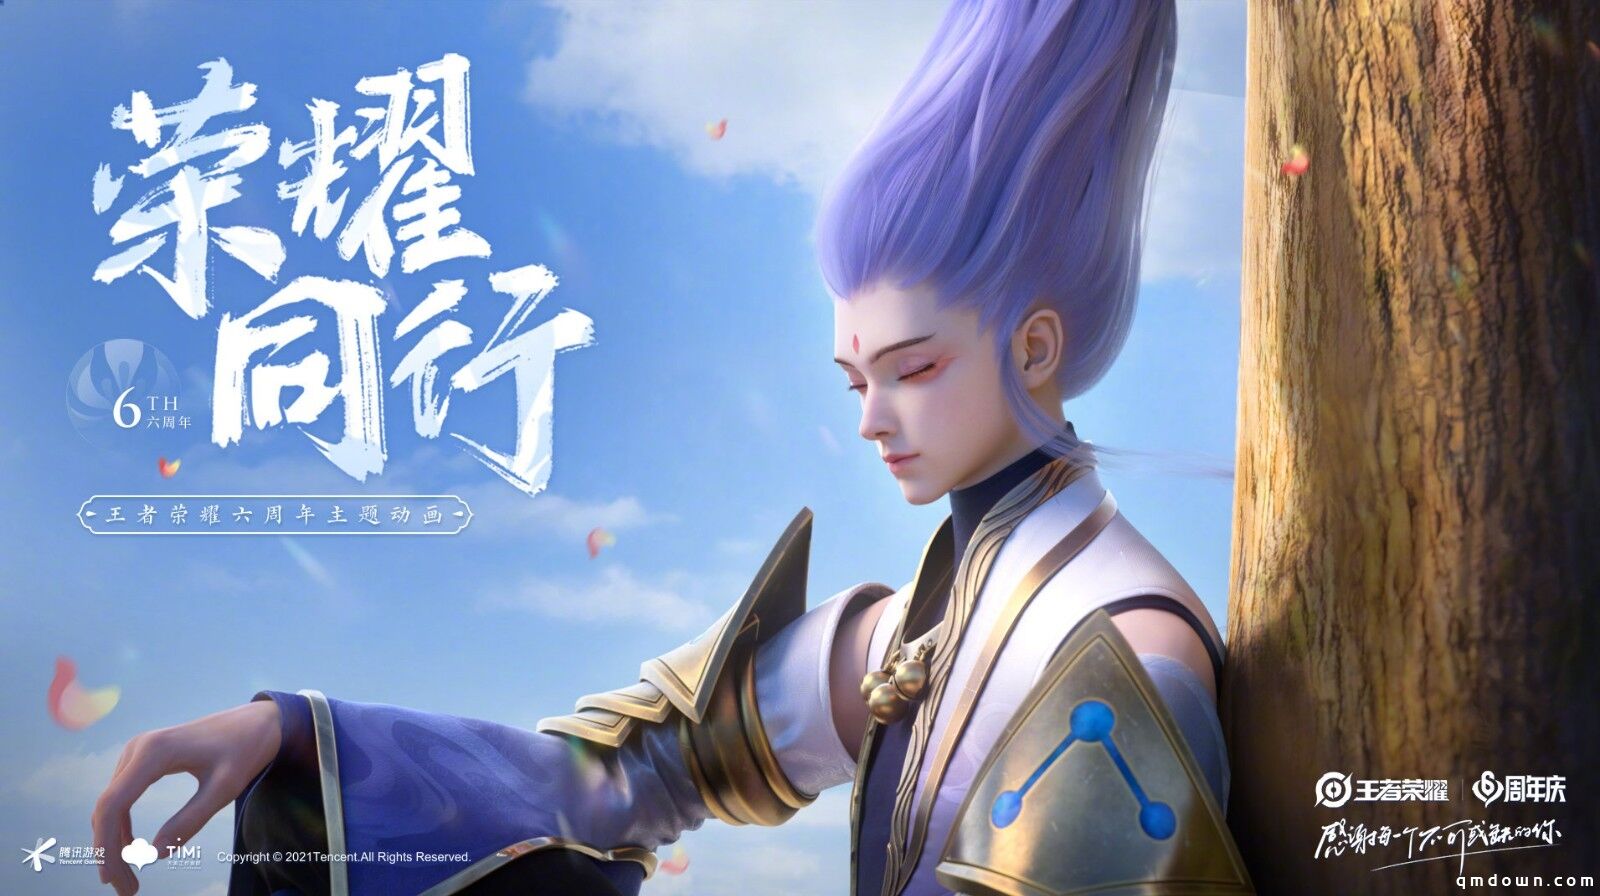 《王者荣耀》公布六周年纪念CG动画 彩蛋超多